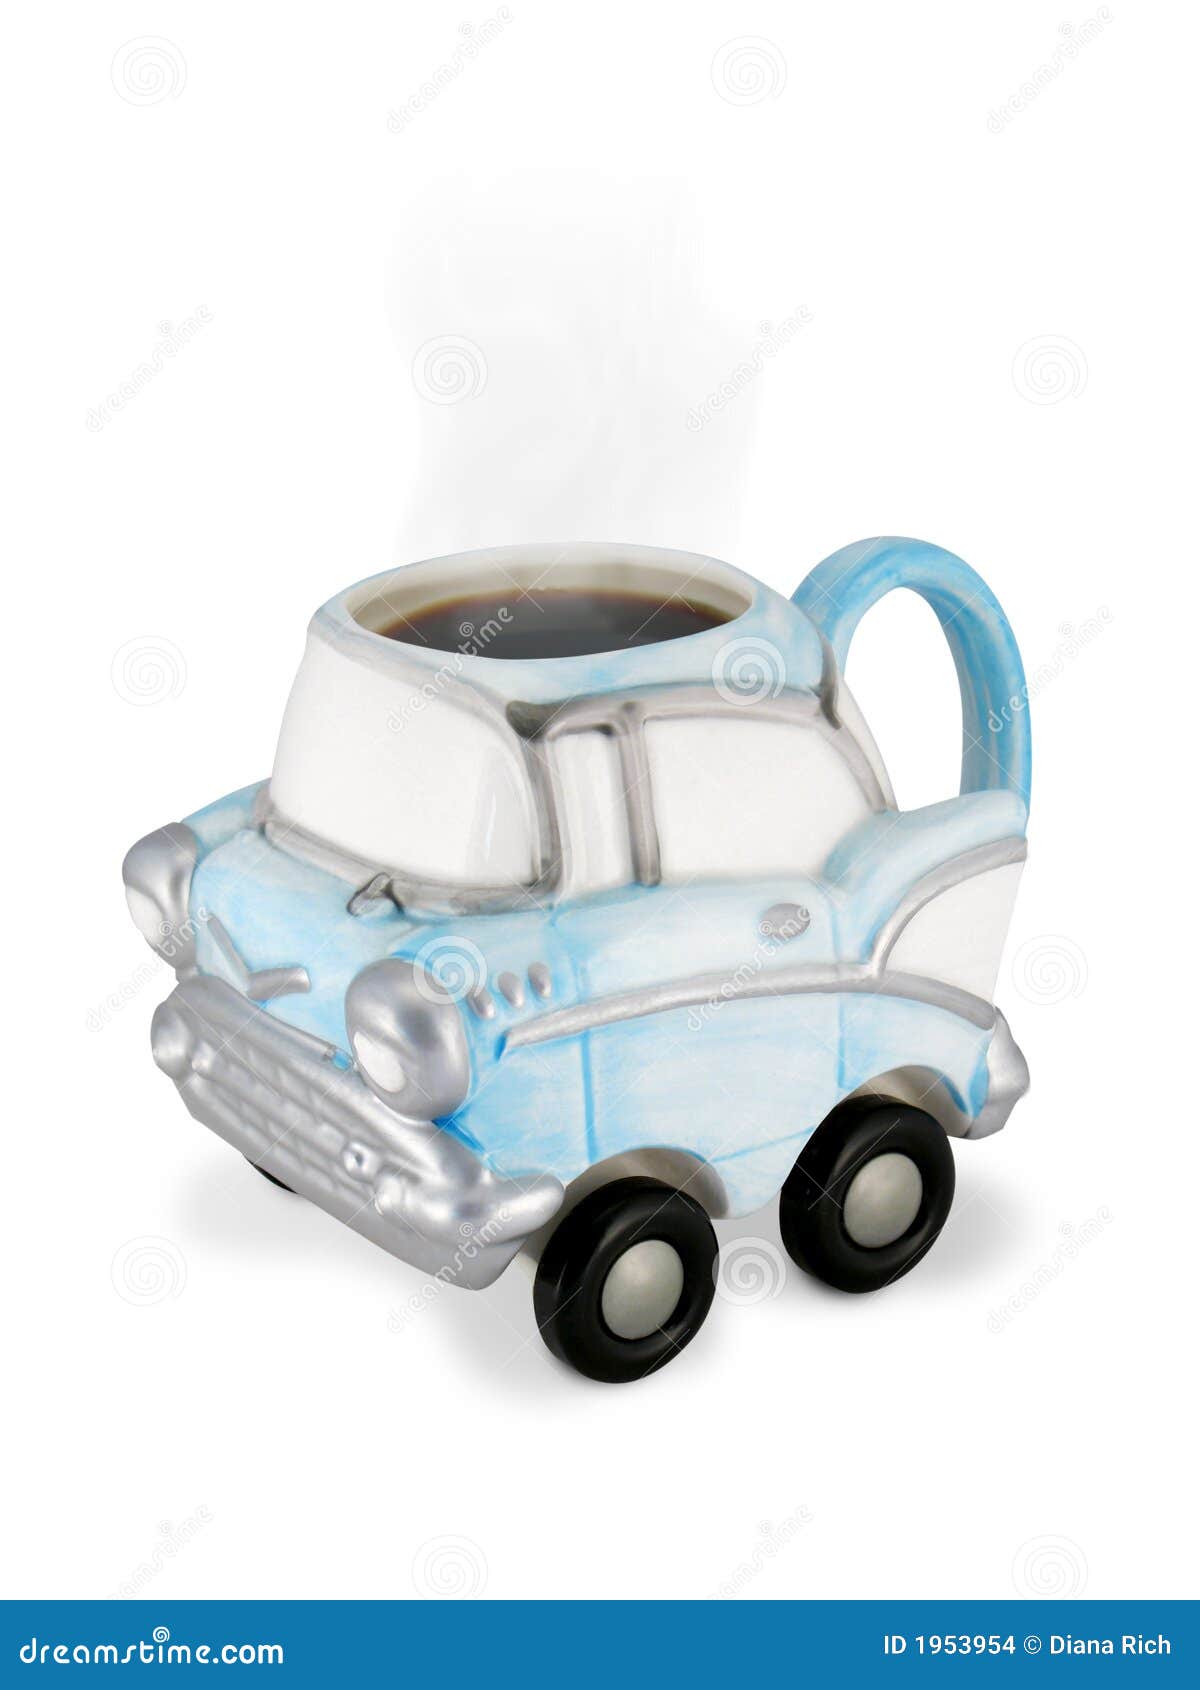 https://thumbs.dreamstime.com/z/vintage-car-coffee-cup-steaming-coffee-1953954.jpg